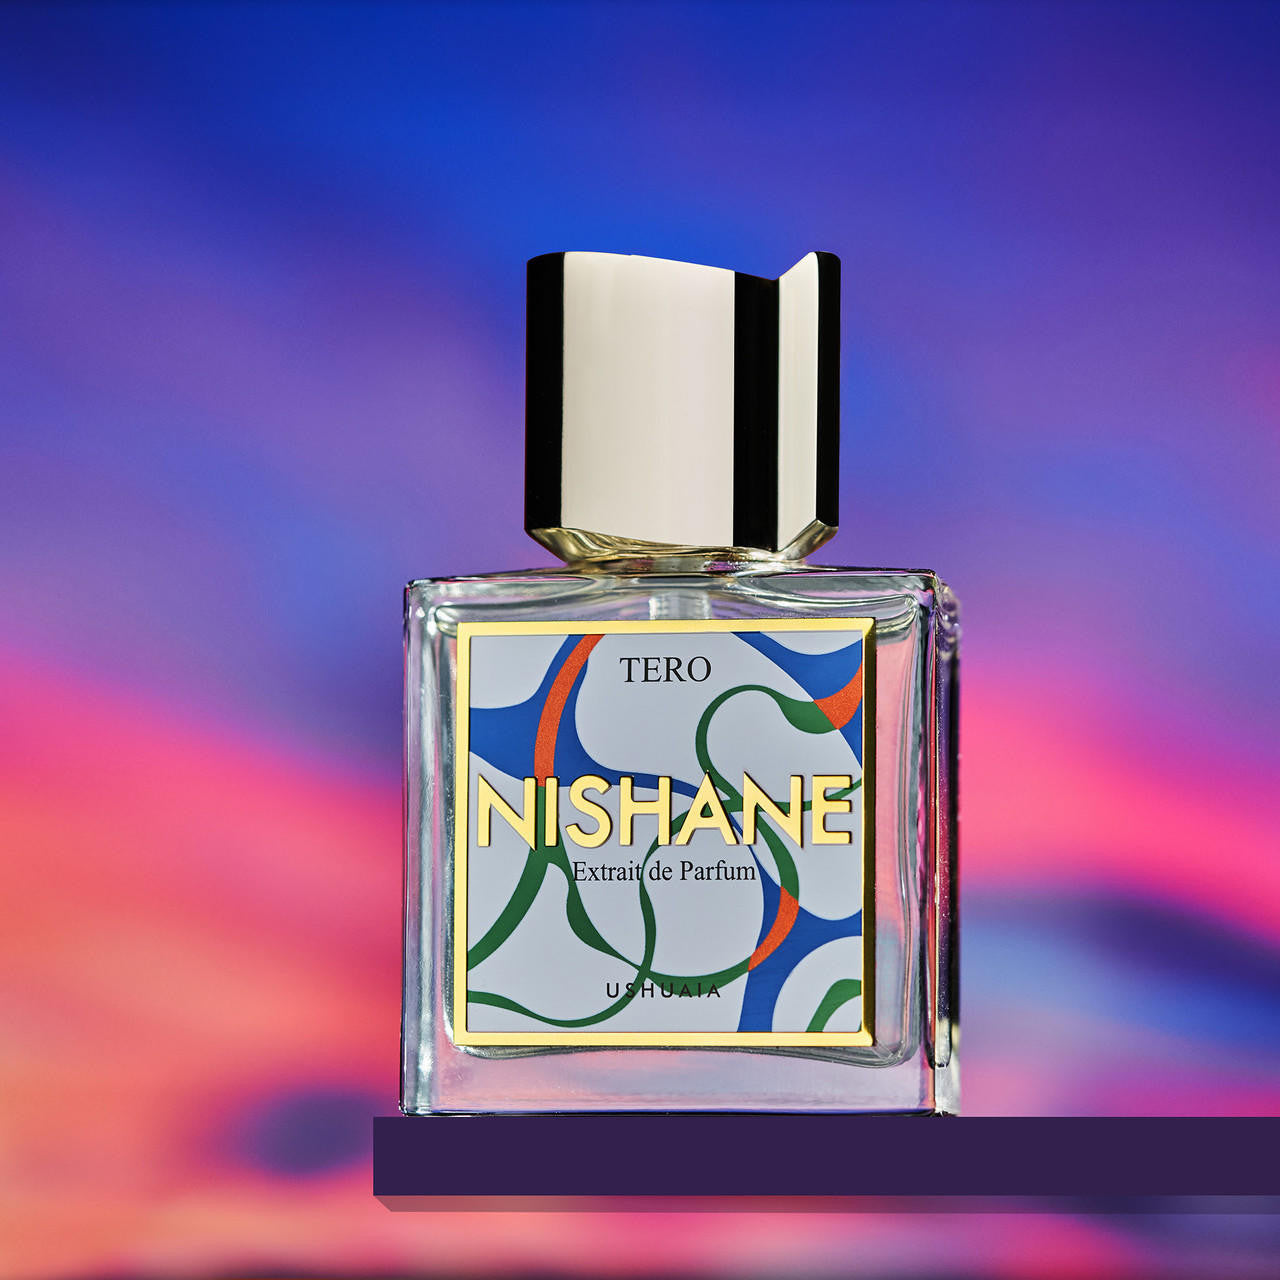  Nishane TERO Extrait de Parfum 